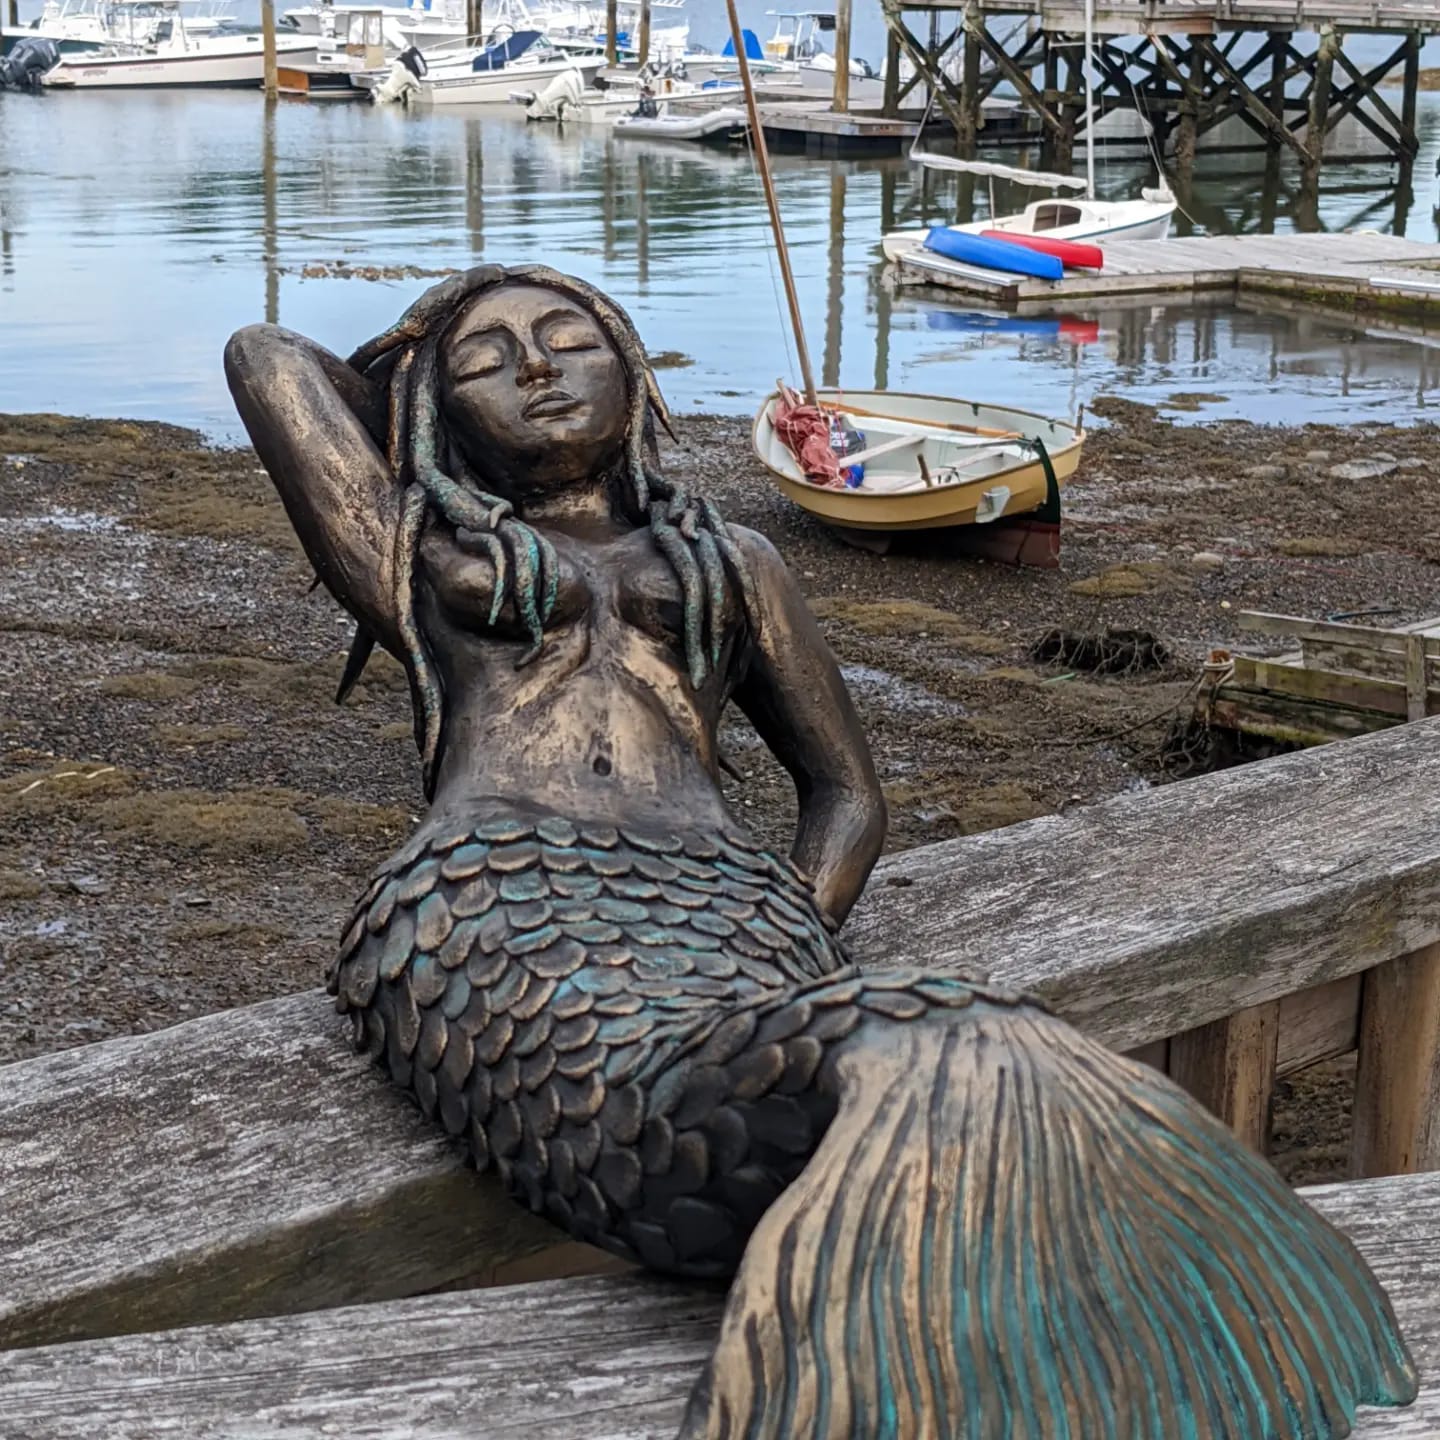 Marinella the mermaid by Elisa Vanelli Sculptor